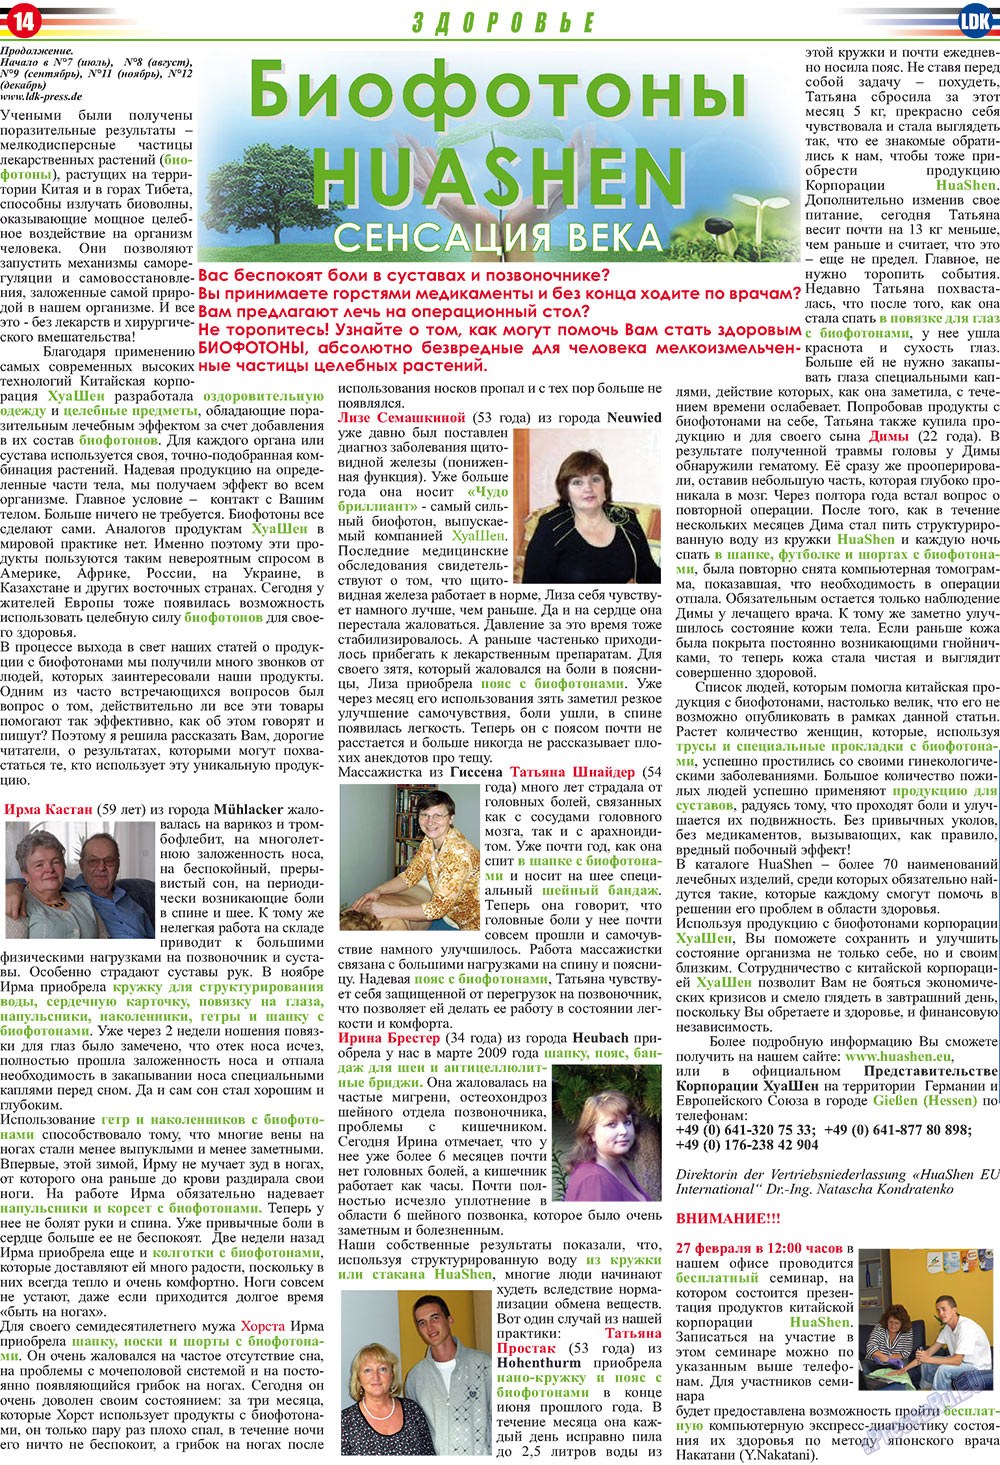 LDK по-русски (газета). 2010 год, номер 2, стр. 14